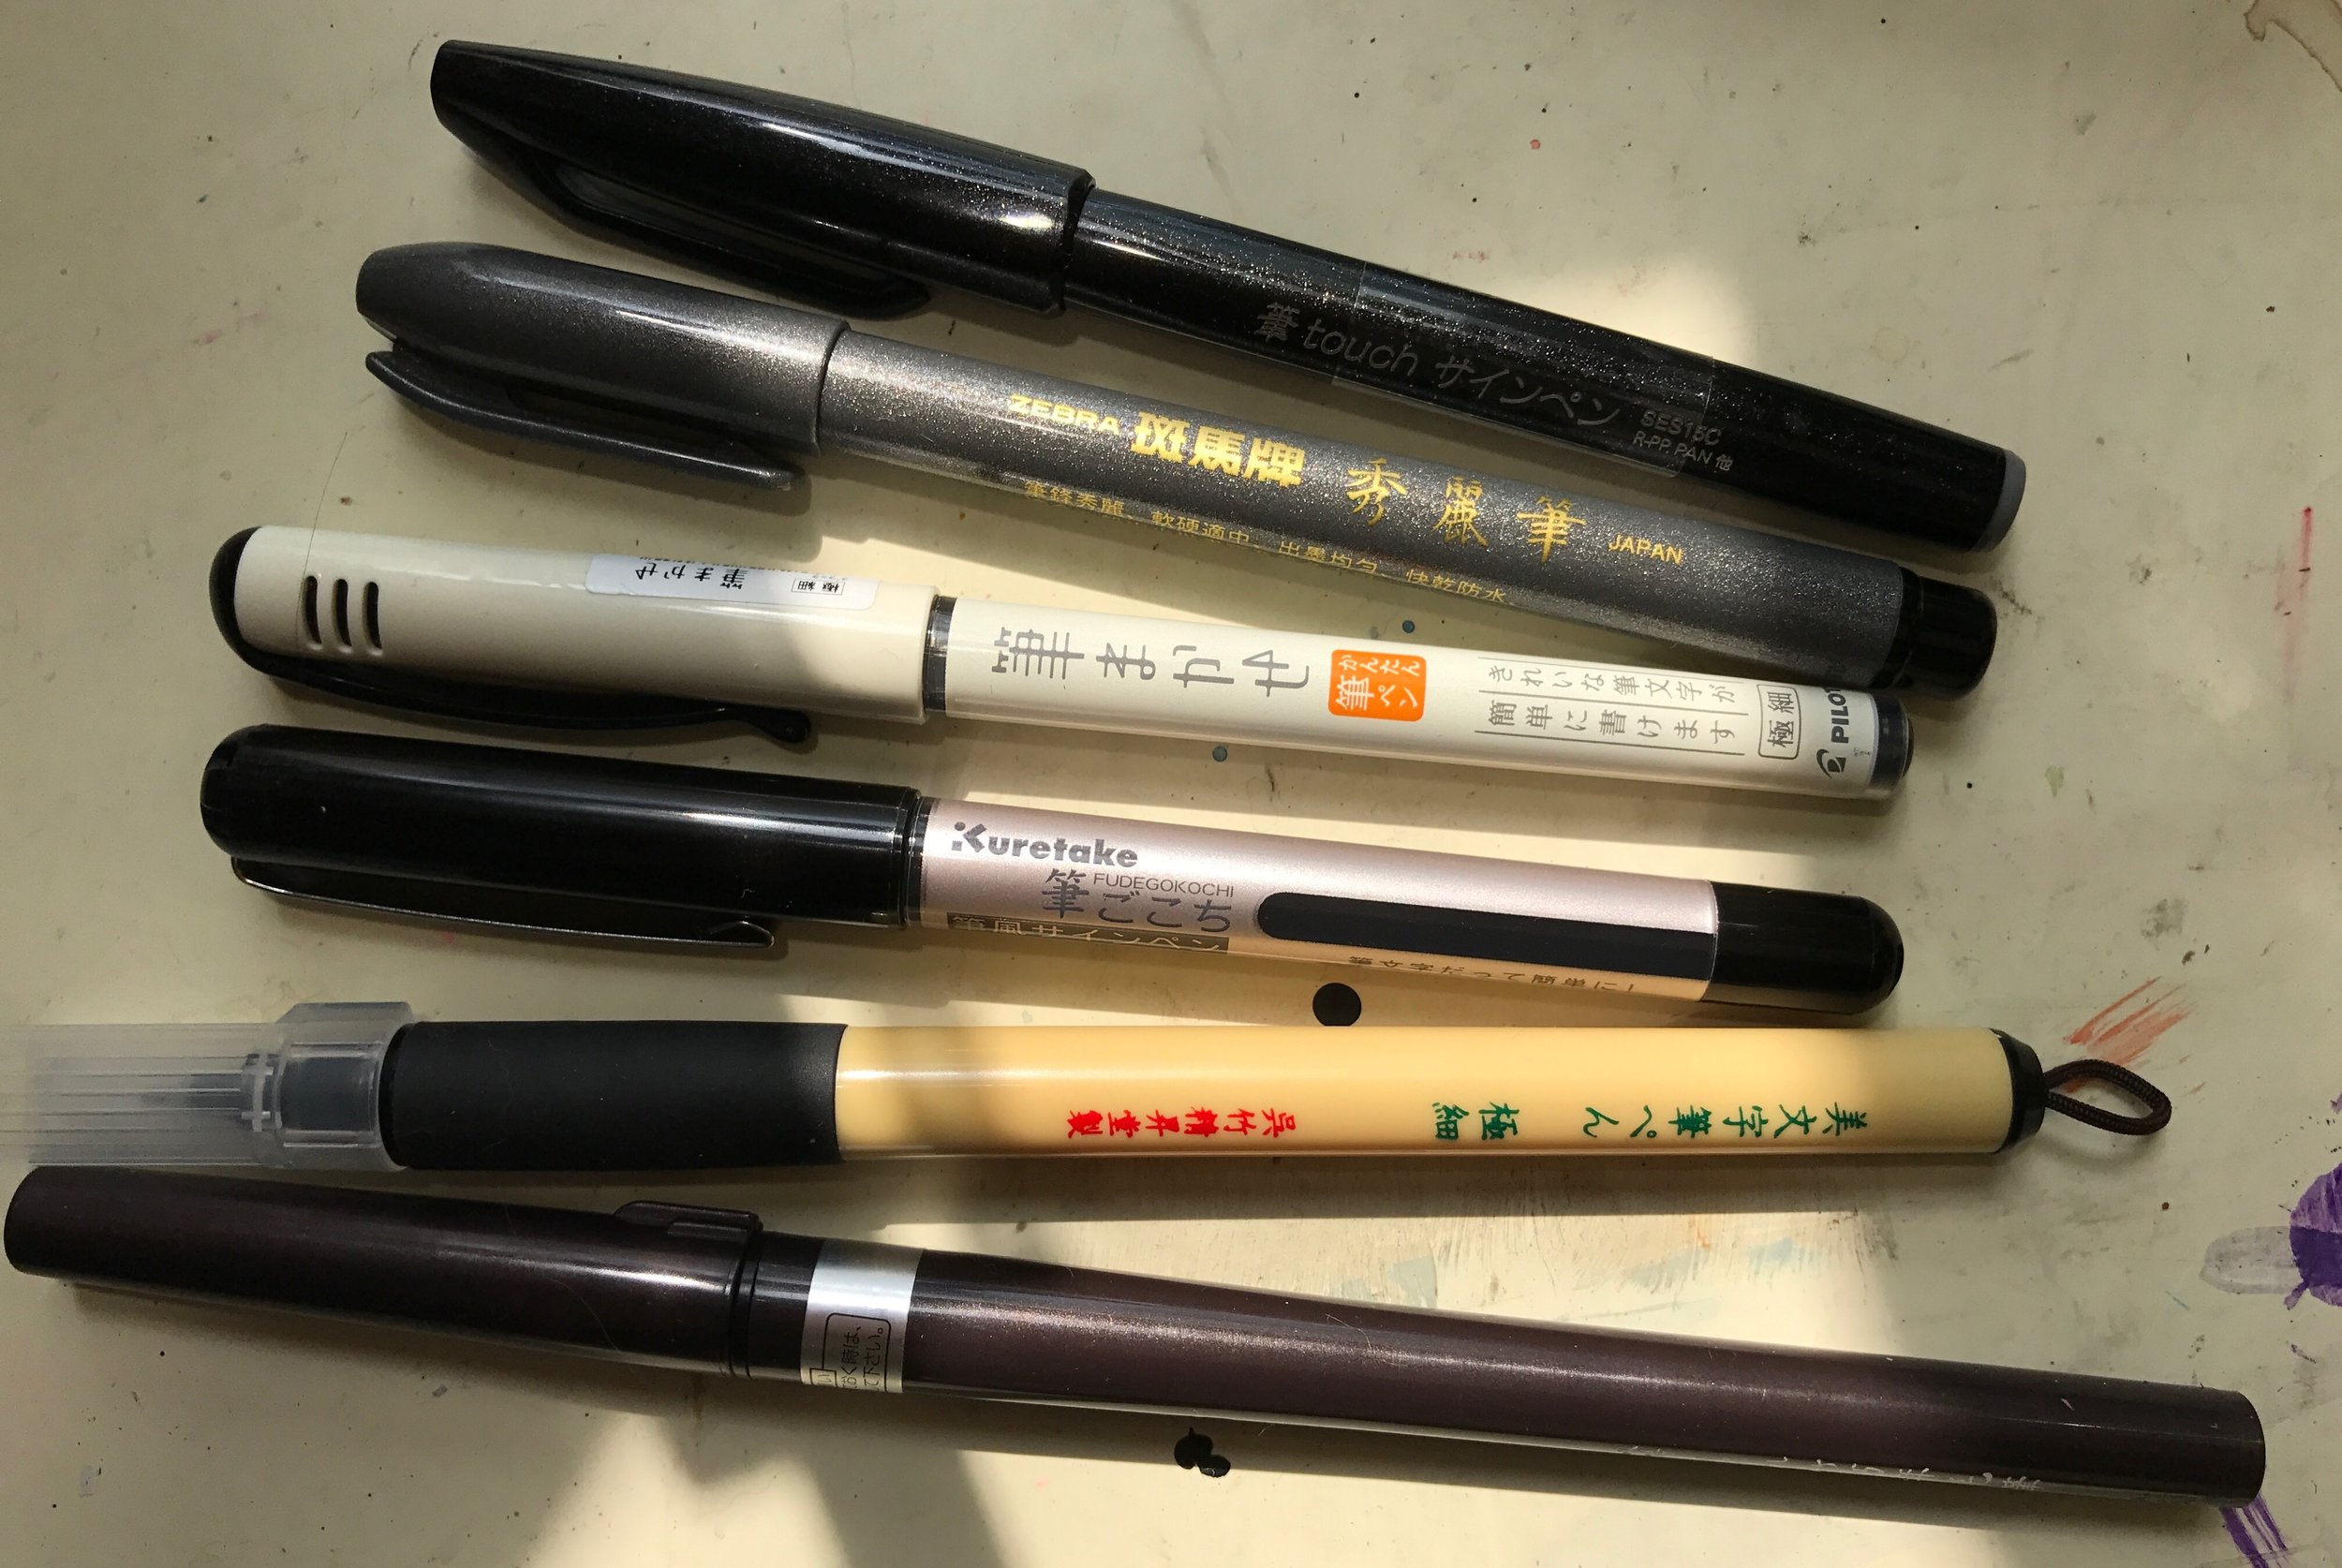  JetPens Drawing Pen Sampler - Fine Tip